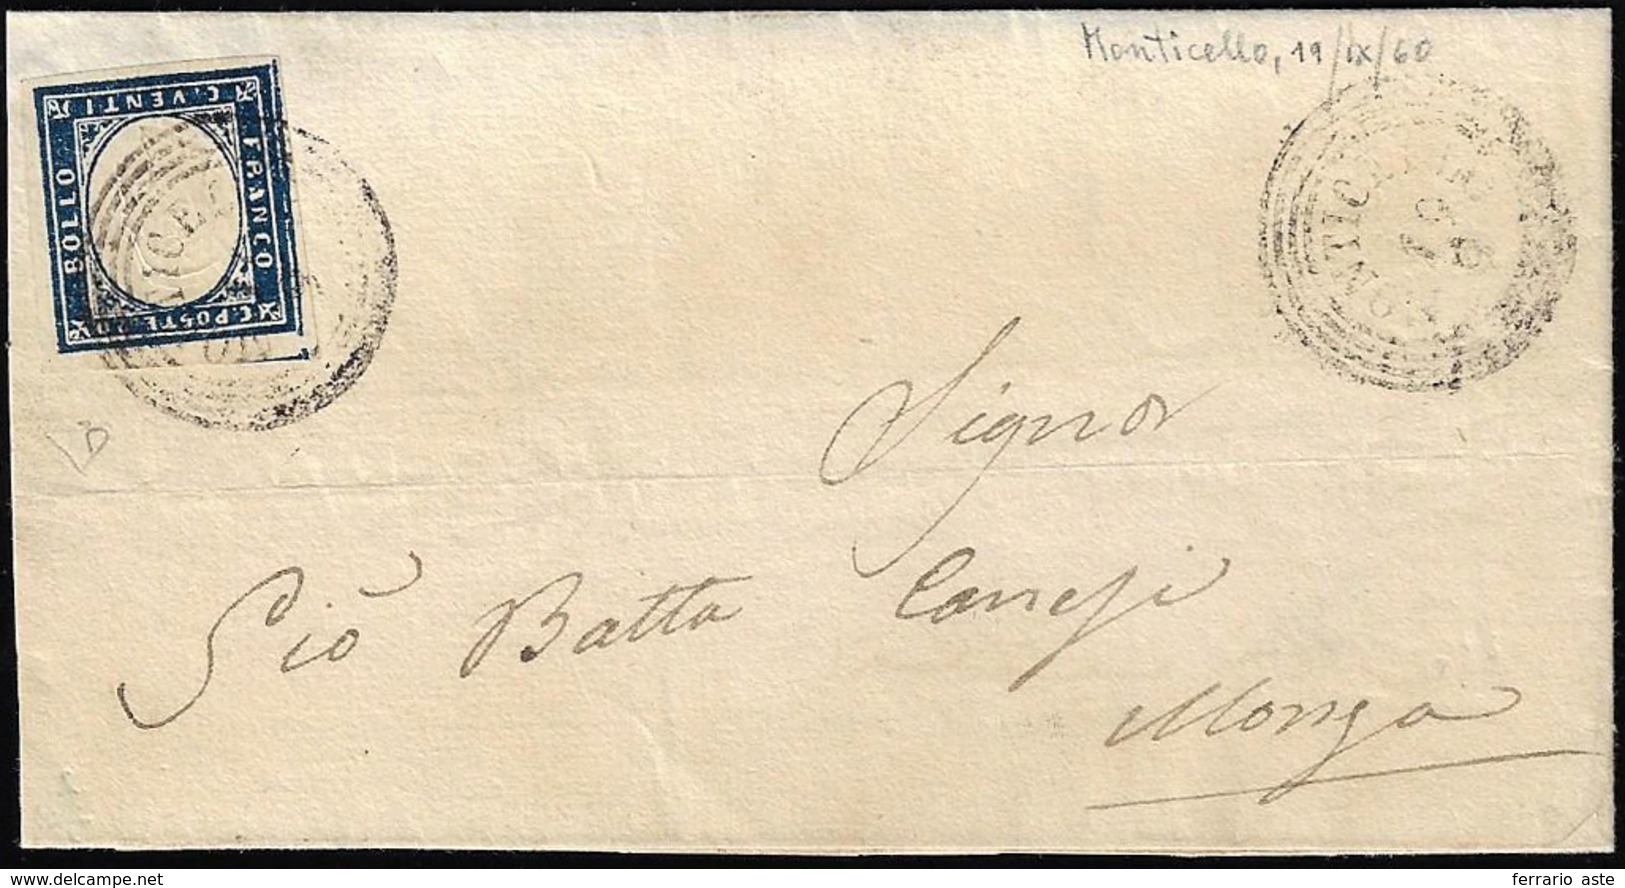 MONTICELLO, C4 Punti 8 - 20 Cent. (Sardegna 15C), Perfetto, Su Lettera Del 19/9/1860 Per Monza. E.Di... - Lombardy-Venetia